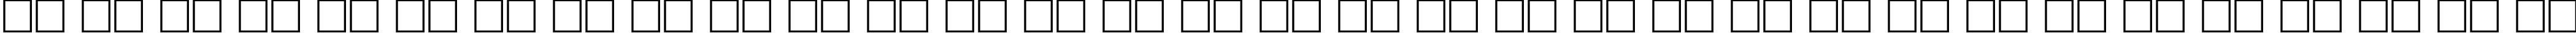 Пример написания русского алфавита шрифтом DG_MasterCard